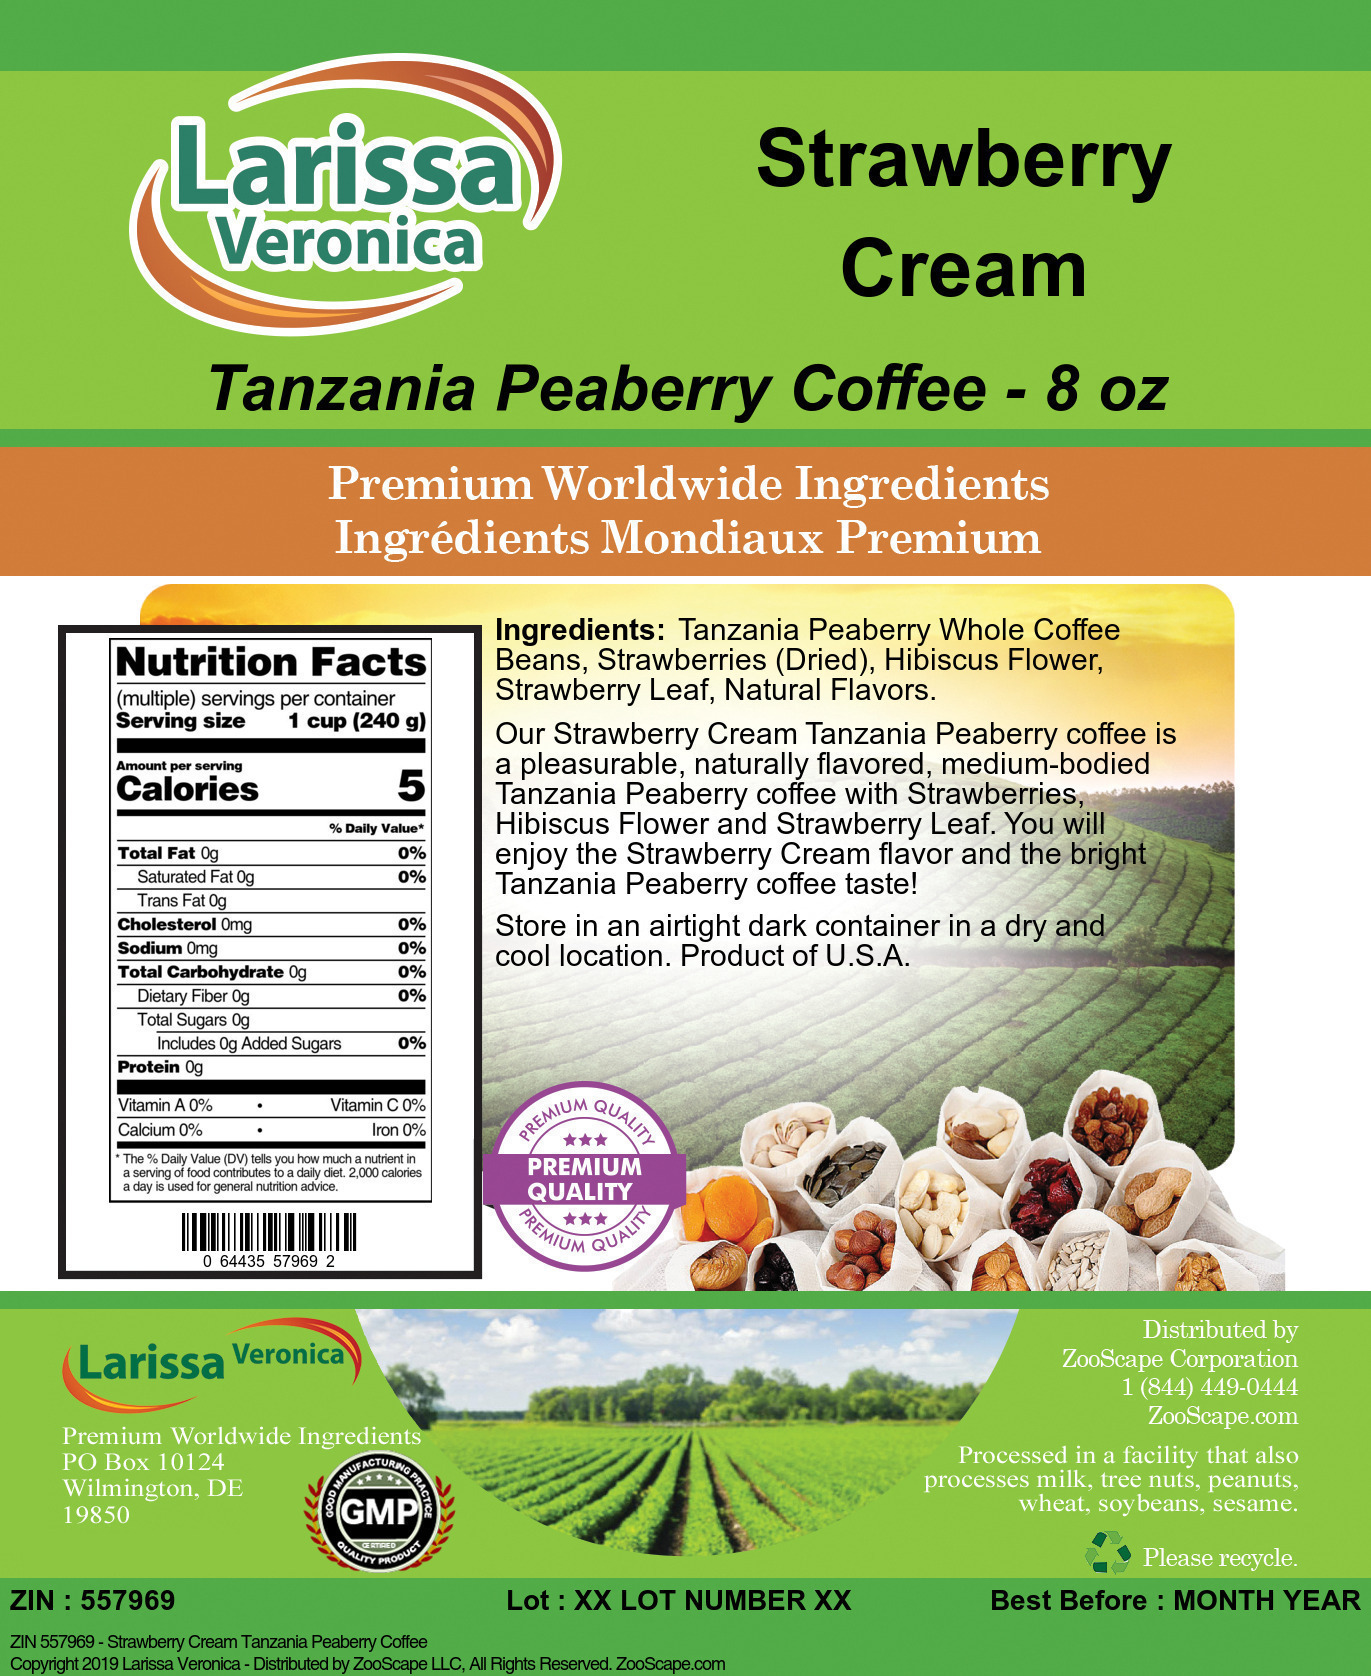 Strawberry Cream Tanzania Peaberry Coffee - Label